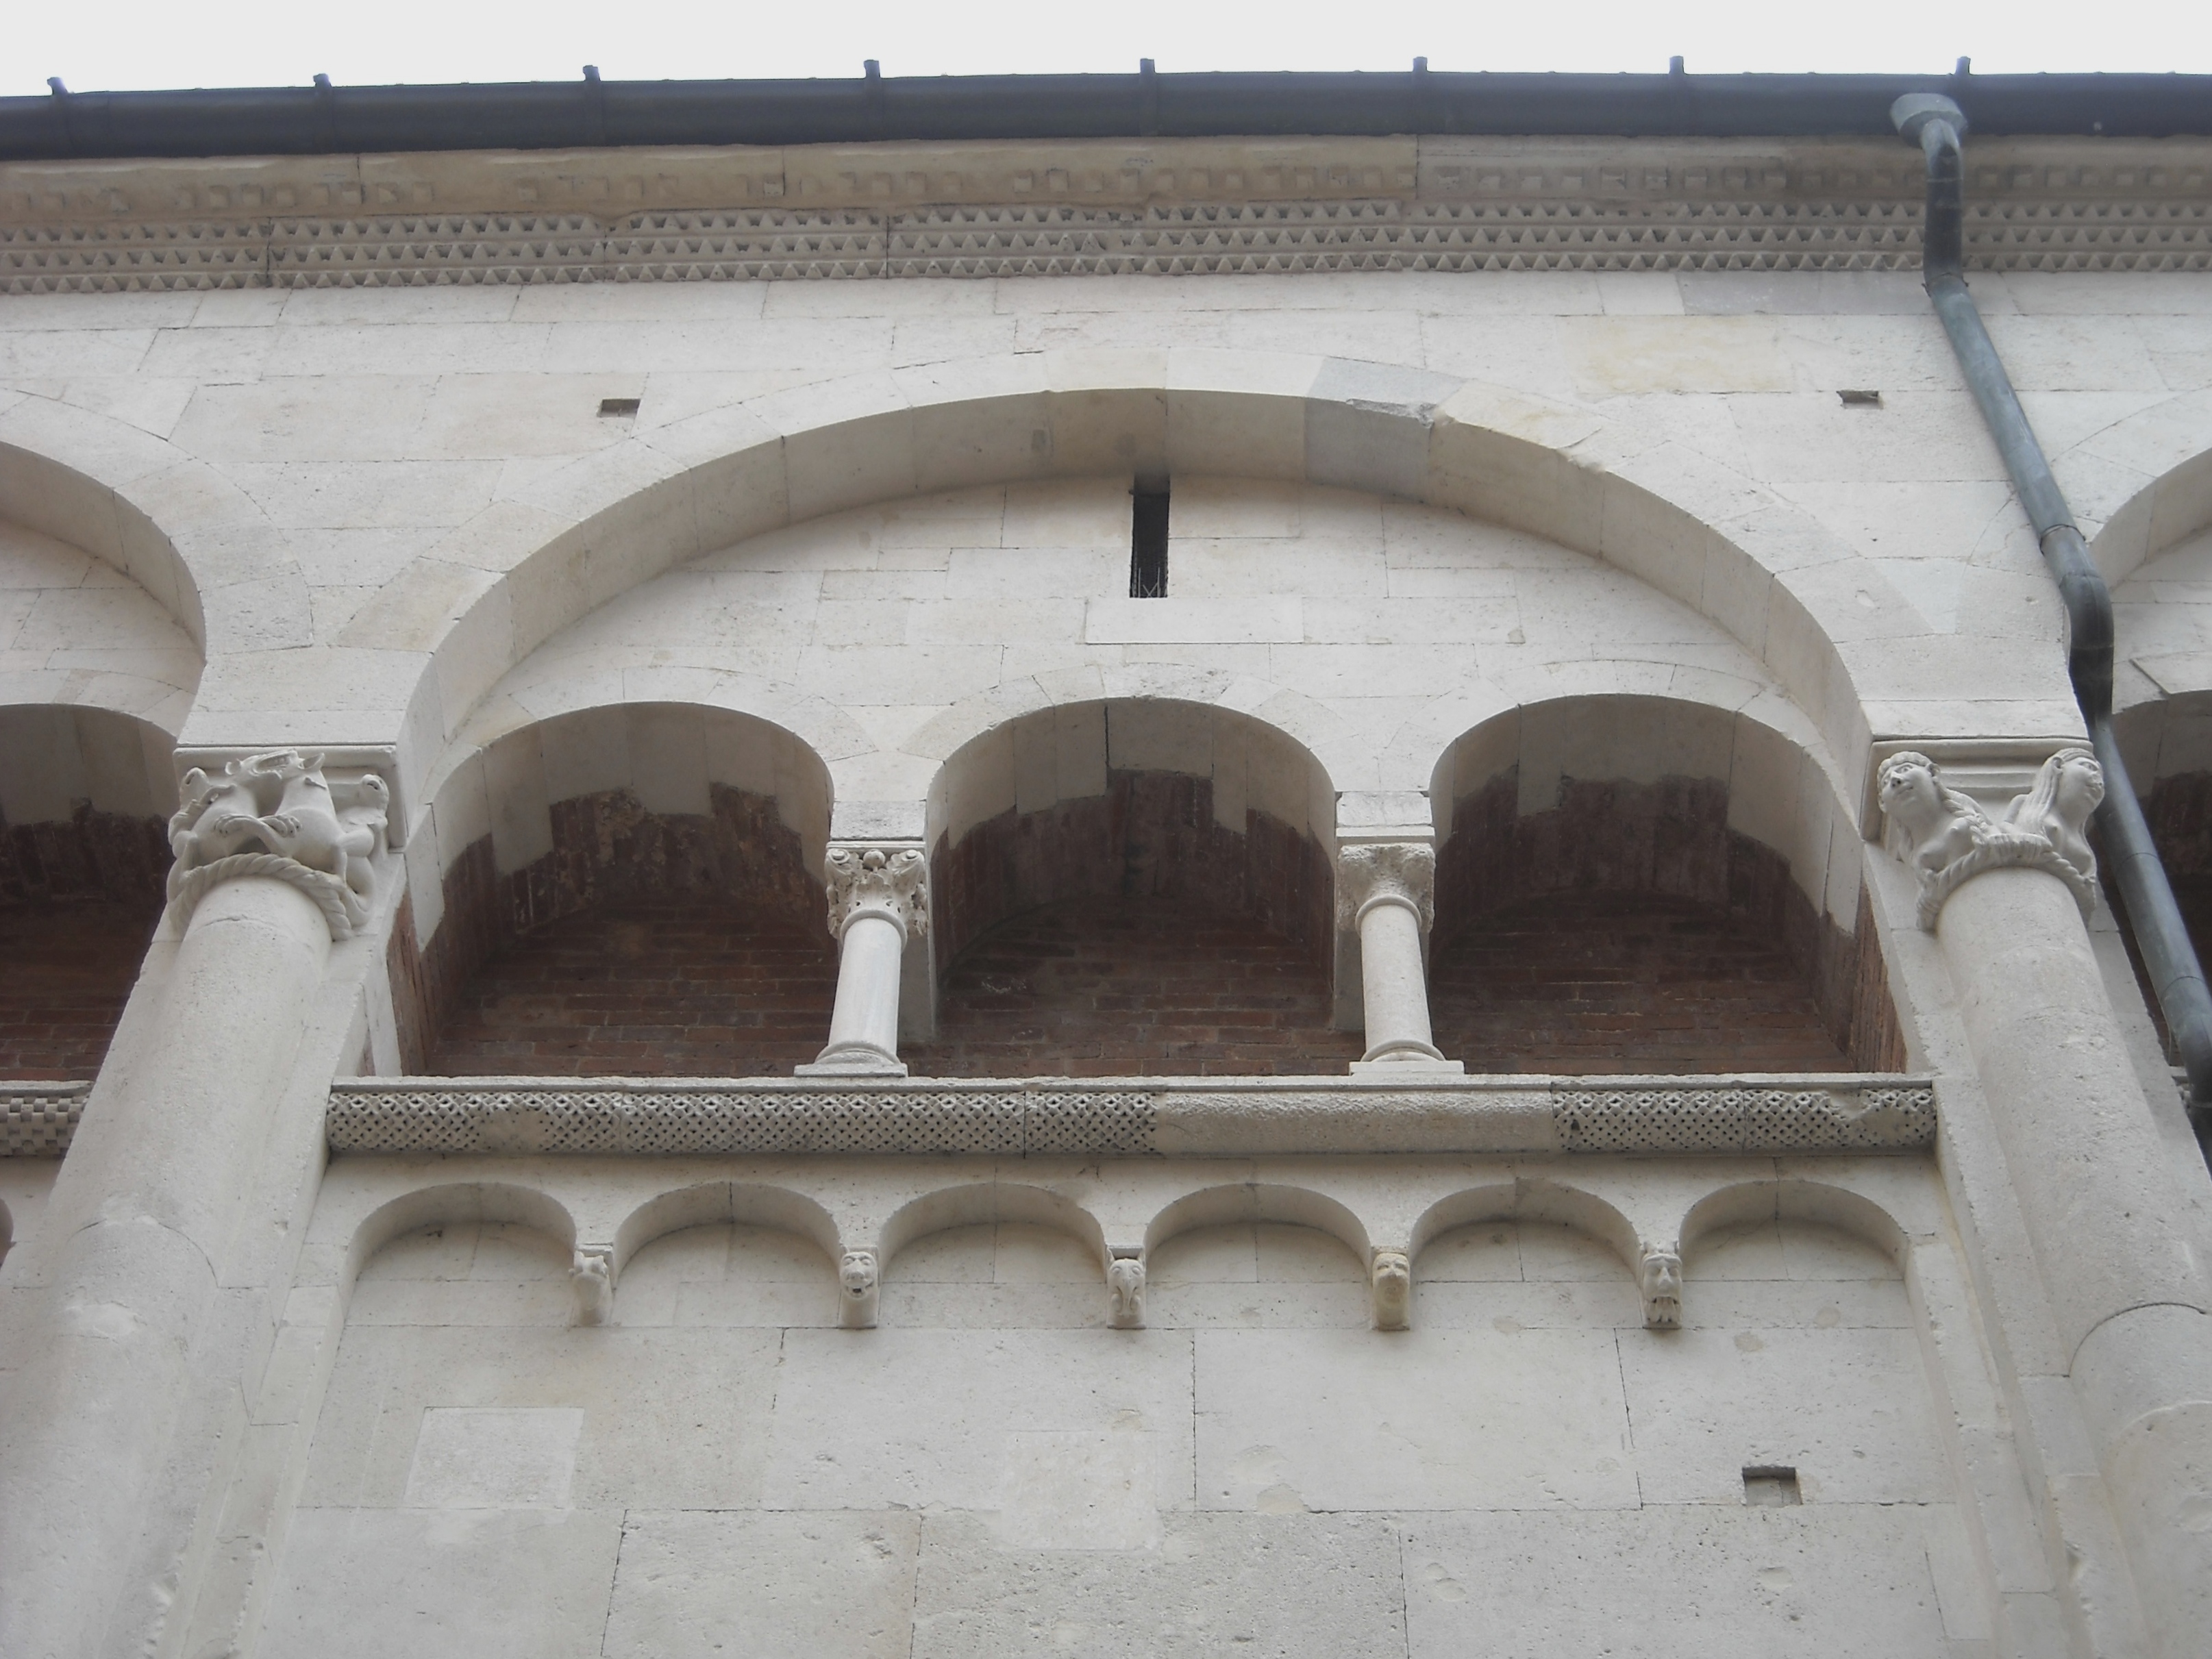 foto: https://upload.wikimedia.org/wikipedia/commons/a/ac/Duomo_di_Modena%2C_particolare_laterale.jpg